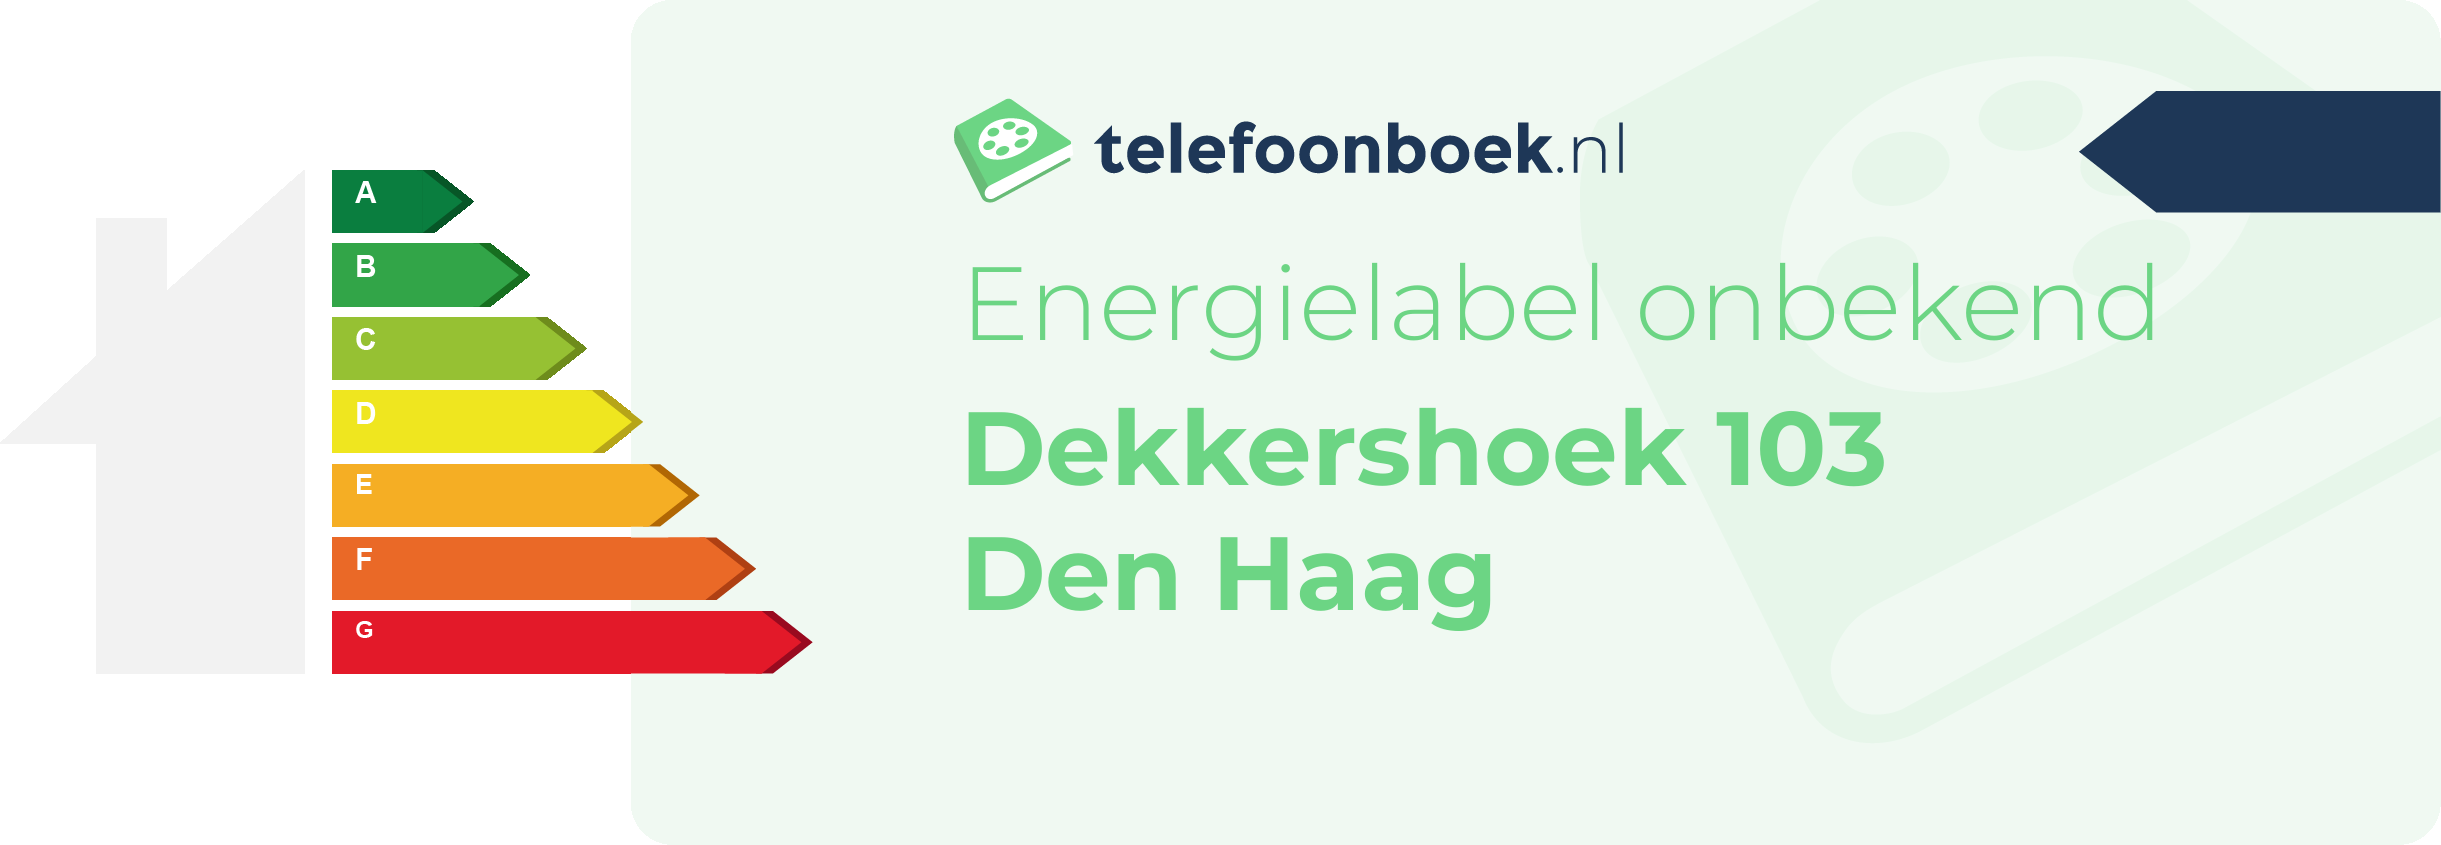 Energielabel Dekkershoek 103 Den Haag